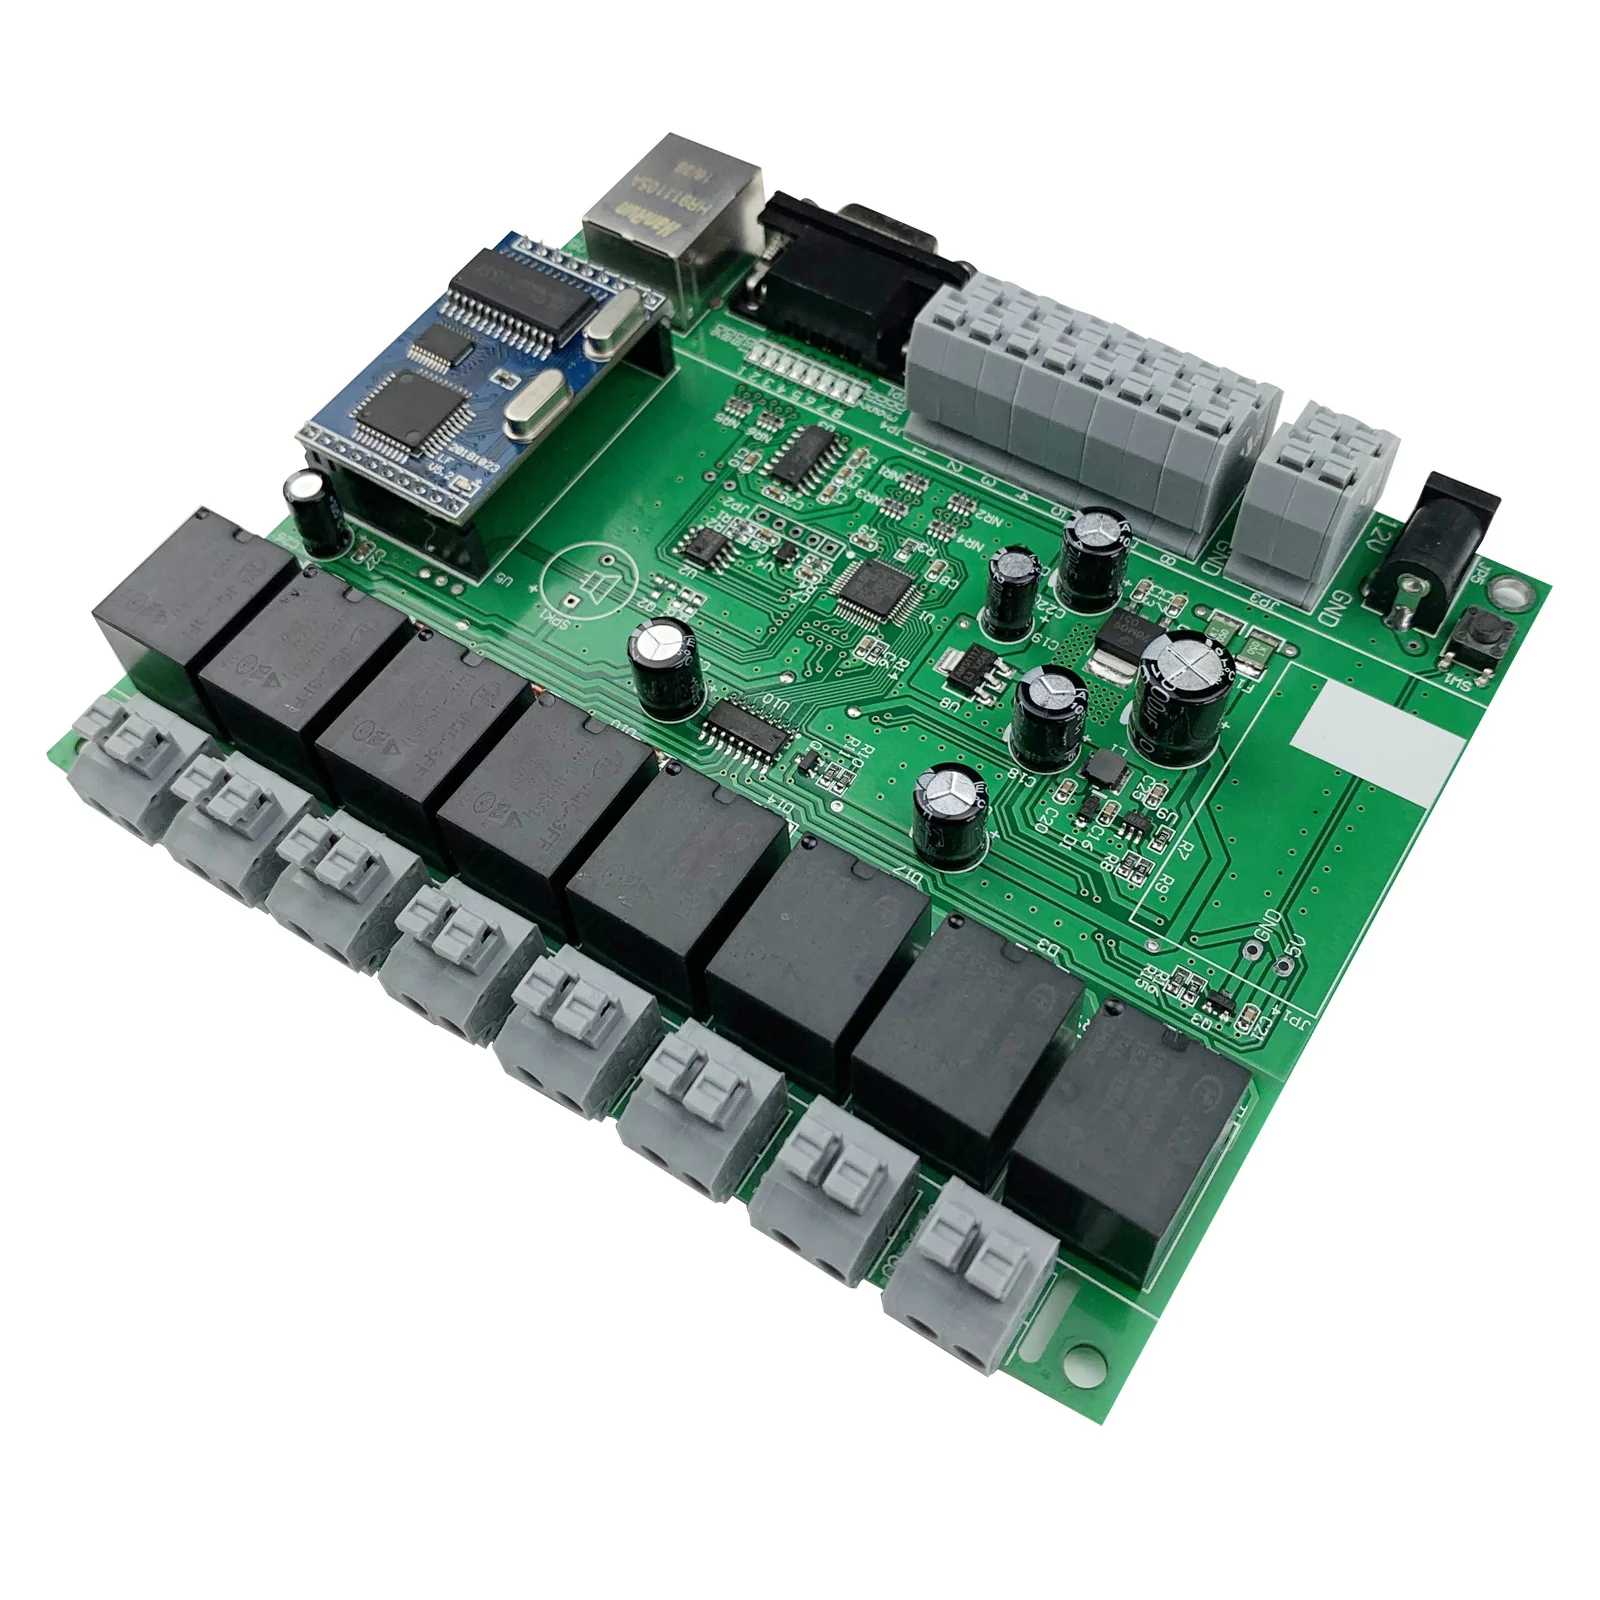 8 组继电器模块家庭自动化控制面板 pcb 电路板电路程序开发板 diy